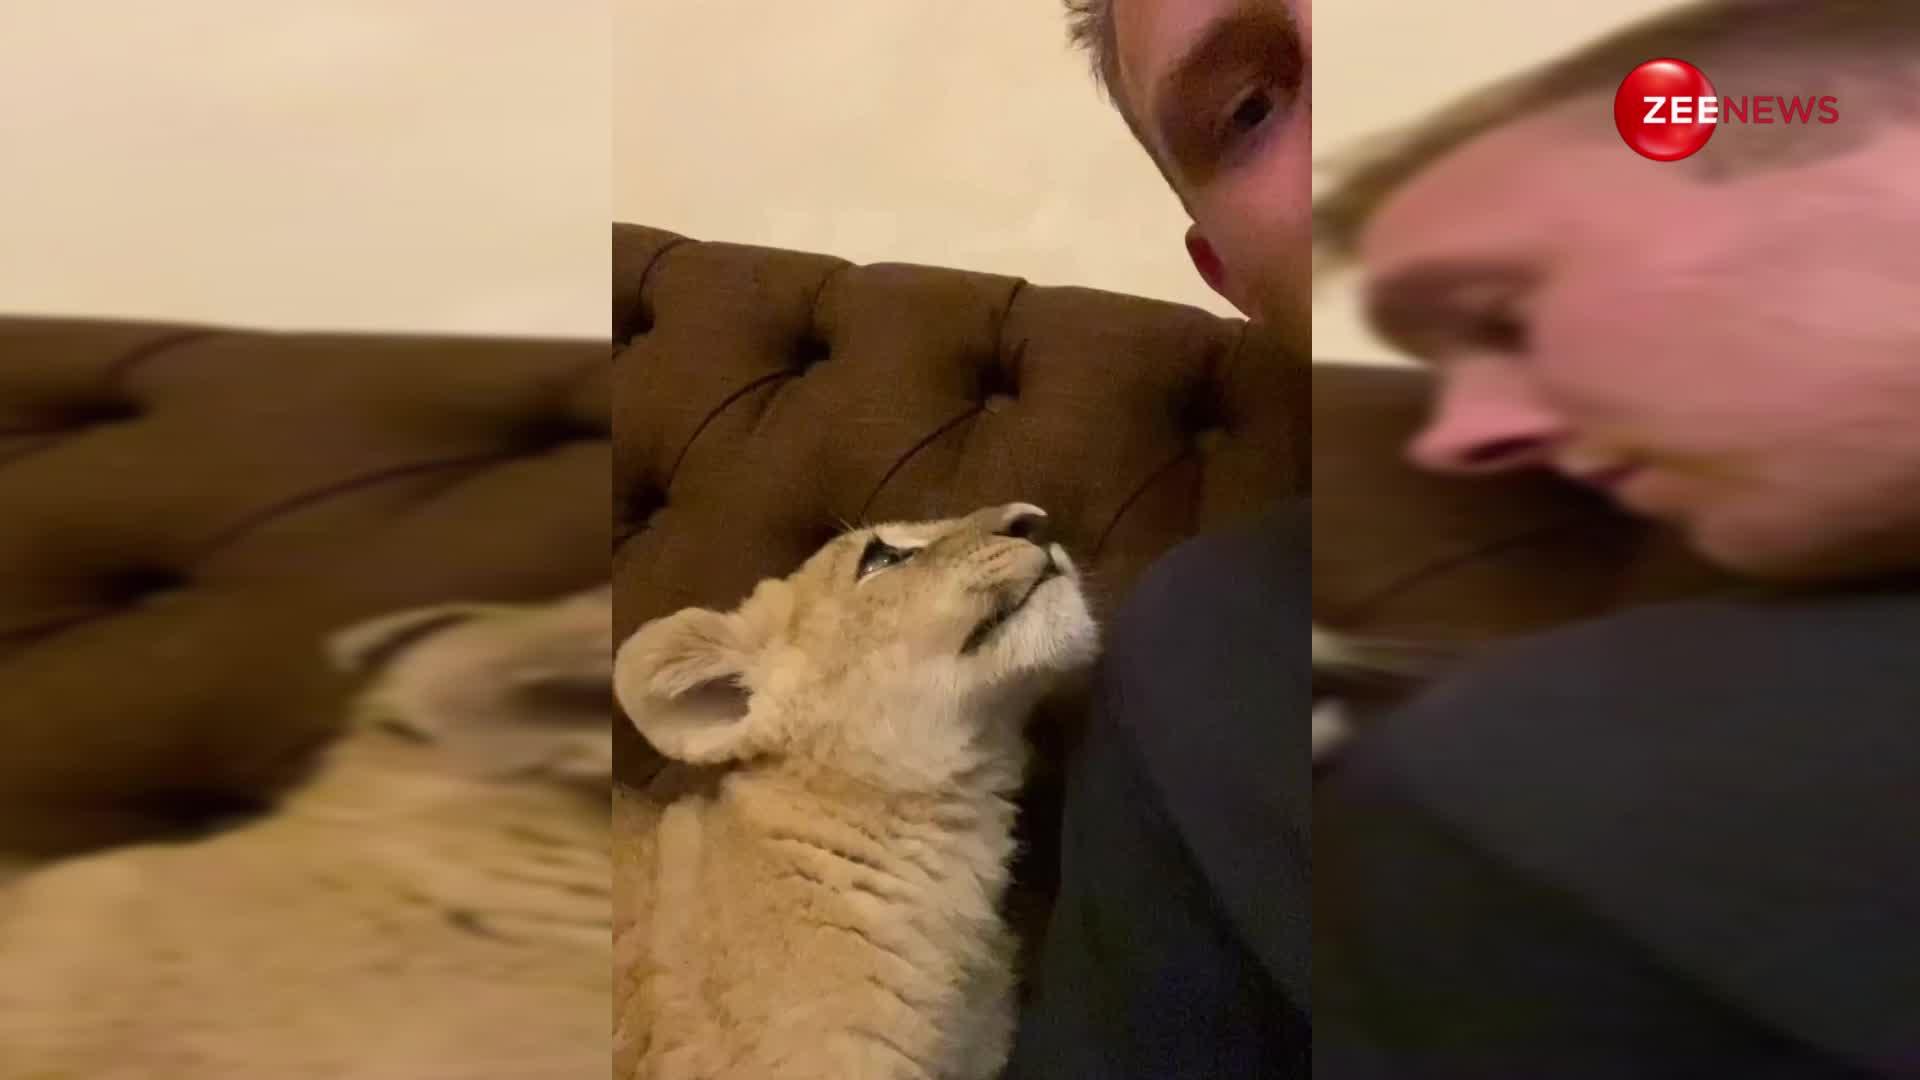 खतरनाक वीडियो! शेर के बच्चे के साथ मस्ती करता दिखा शख्स आखिर में हुआ कुछ ऐसा, देख फटी रह जाएंगी आपकी आंखें